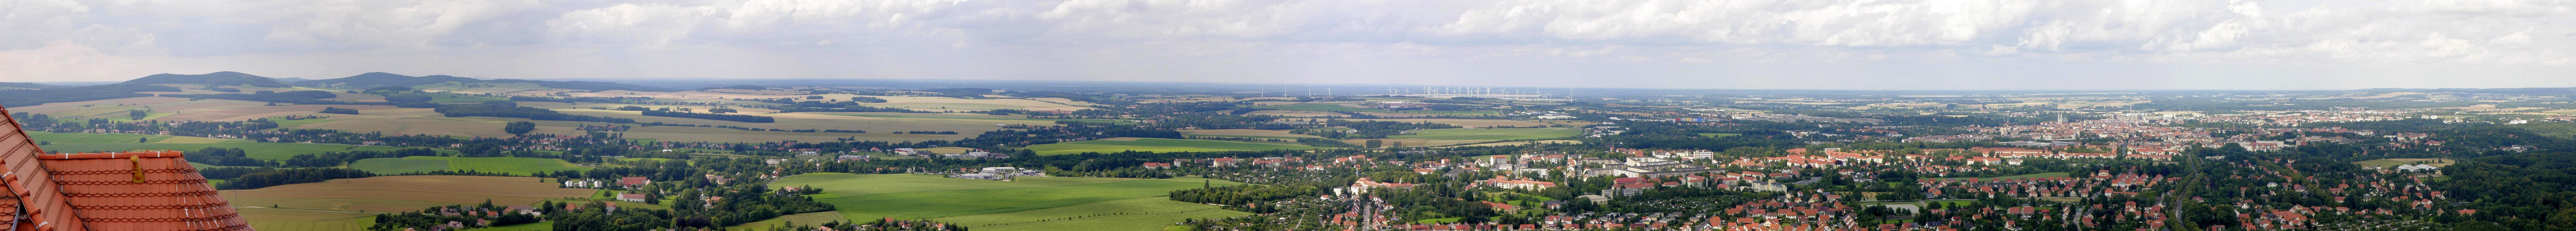 Panorama Göerlitz von der Landeskrone in südlicher Richtung